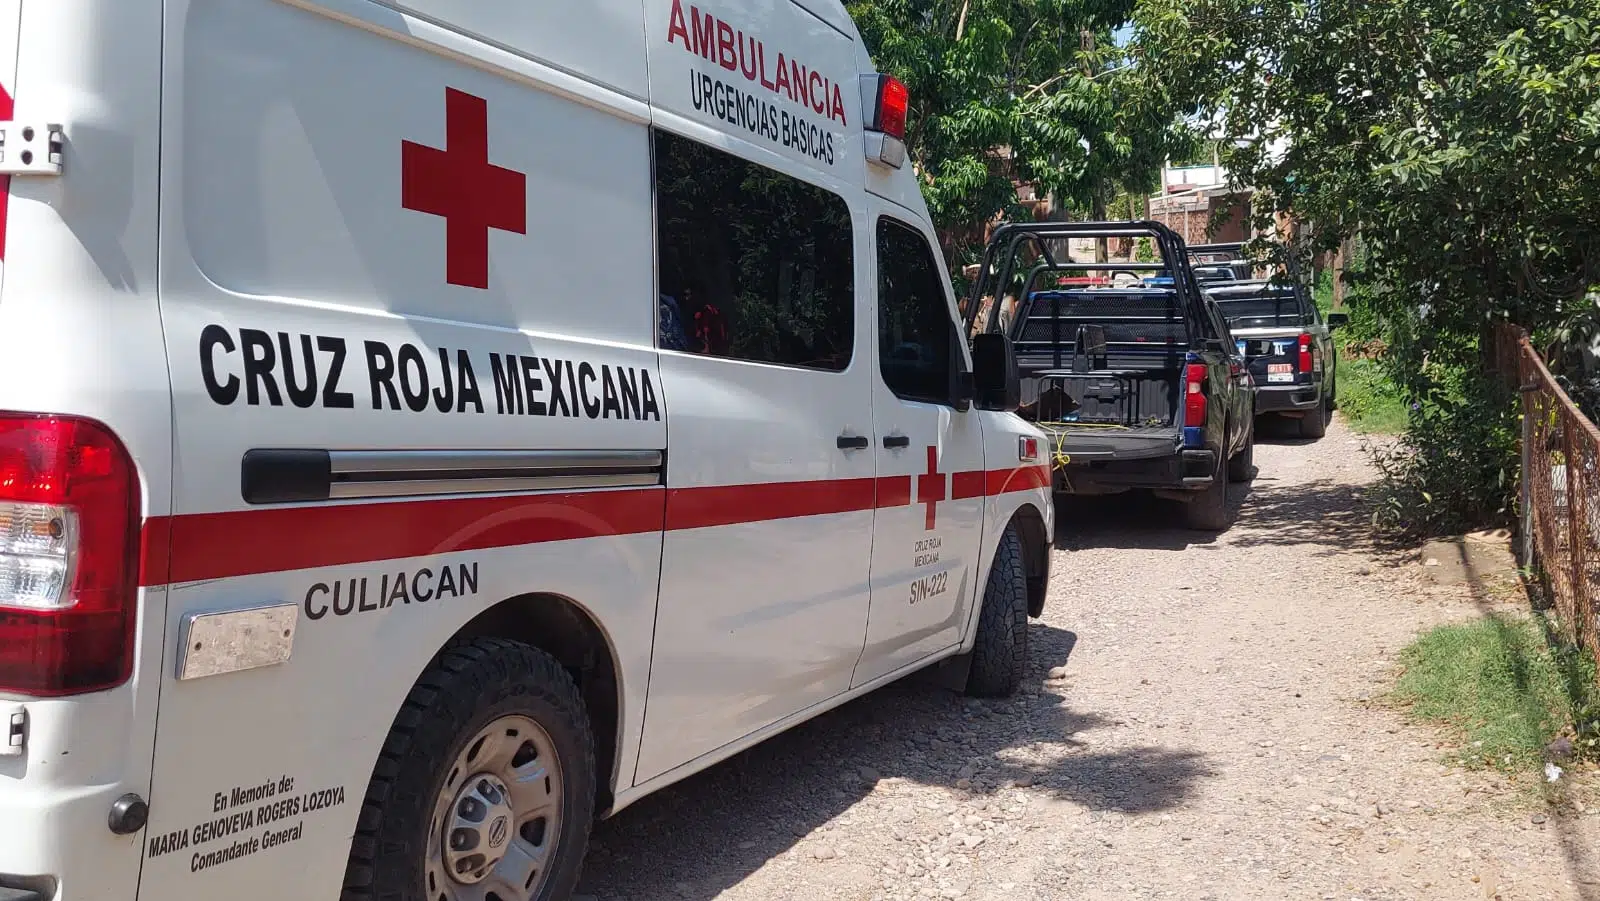 Ambulancia de Cruz Roja Culiacán